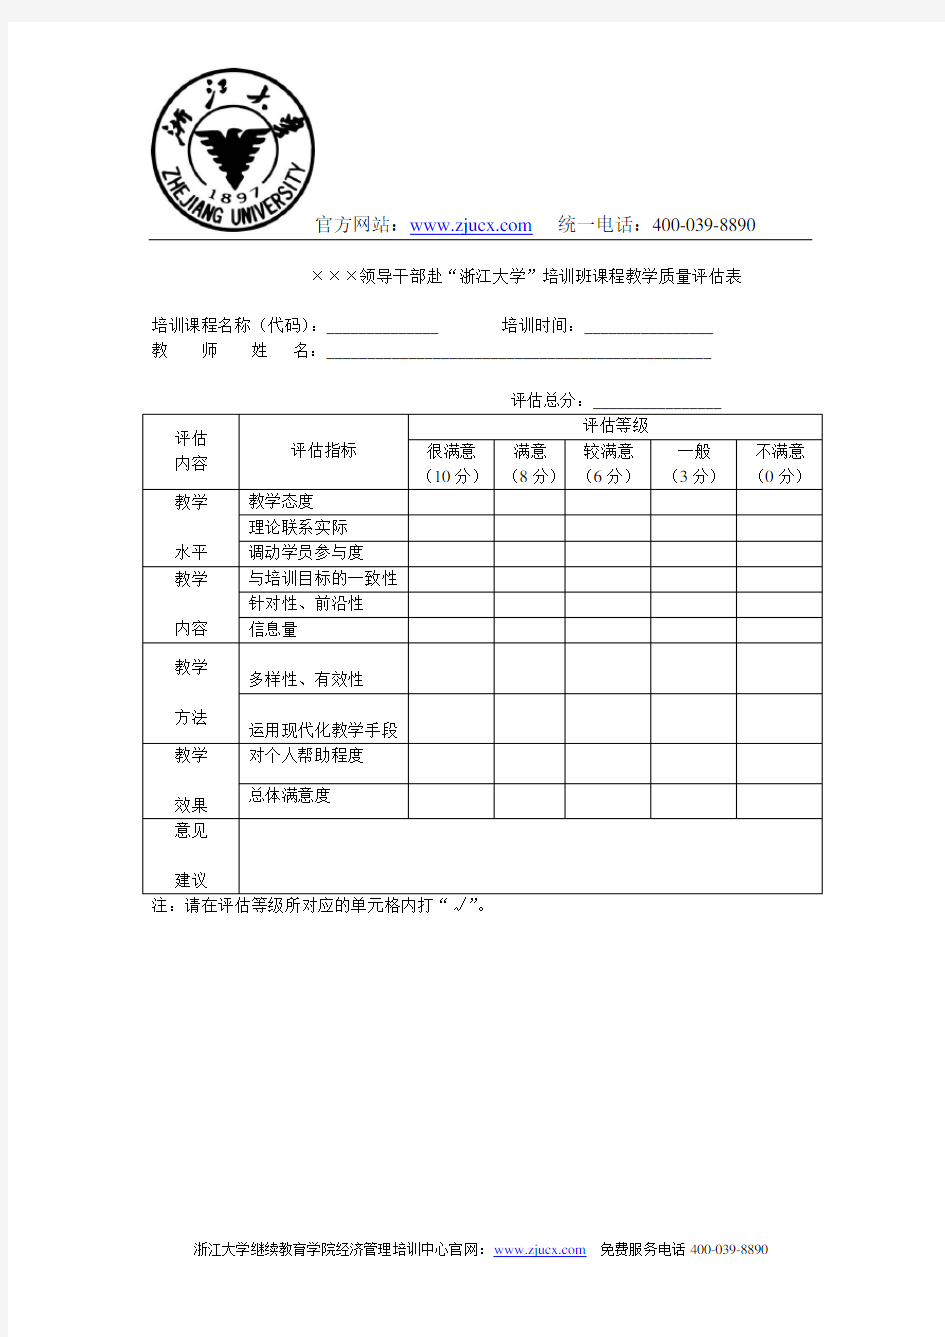 浙江大学干部培训课程教学质量评估表